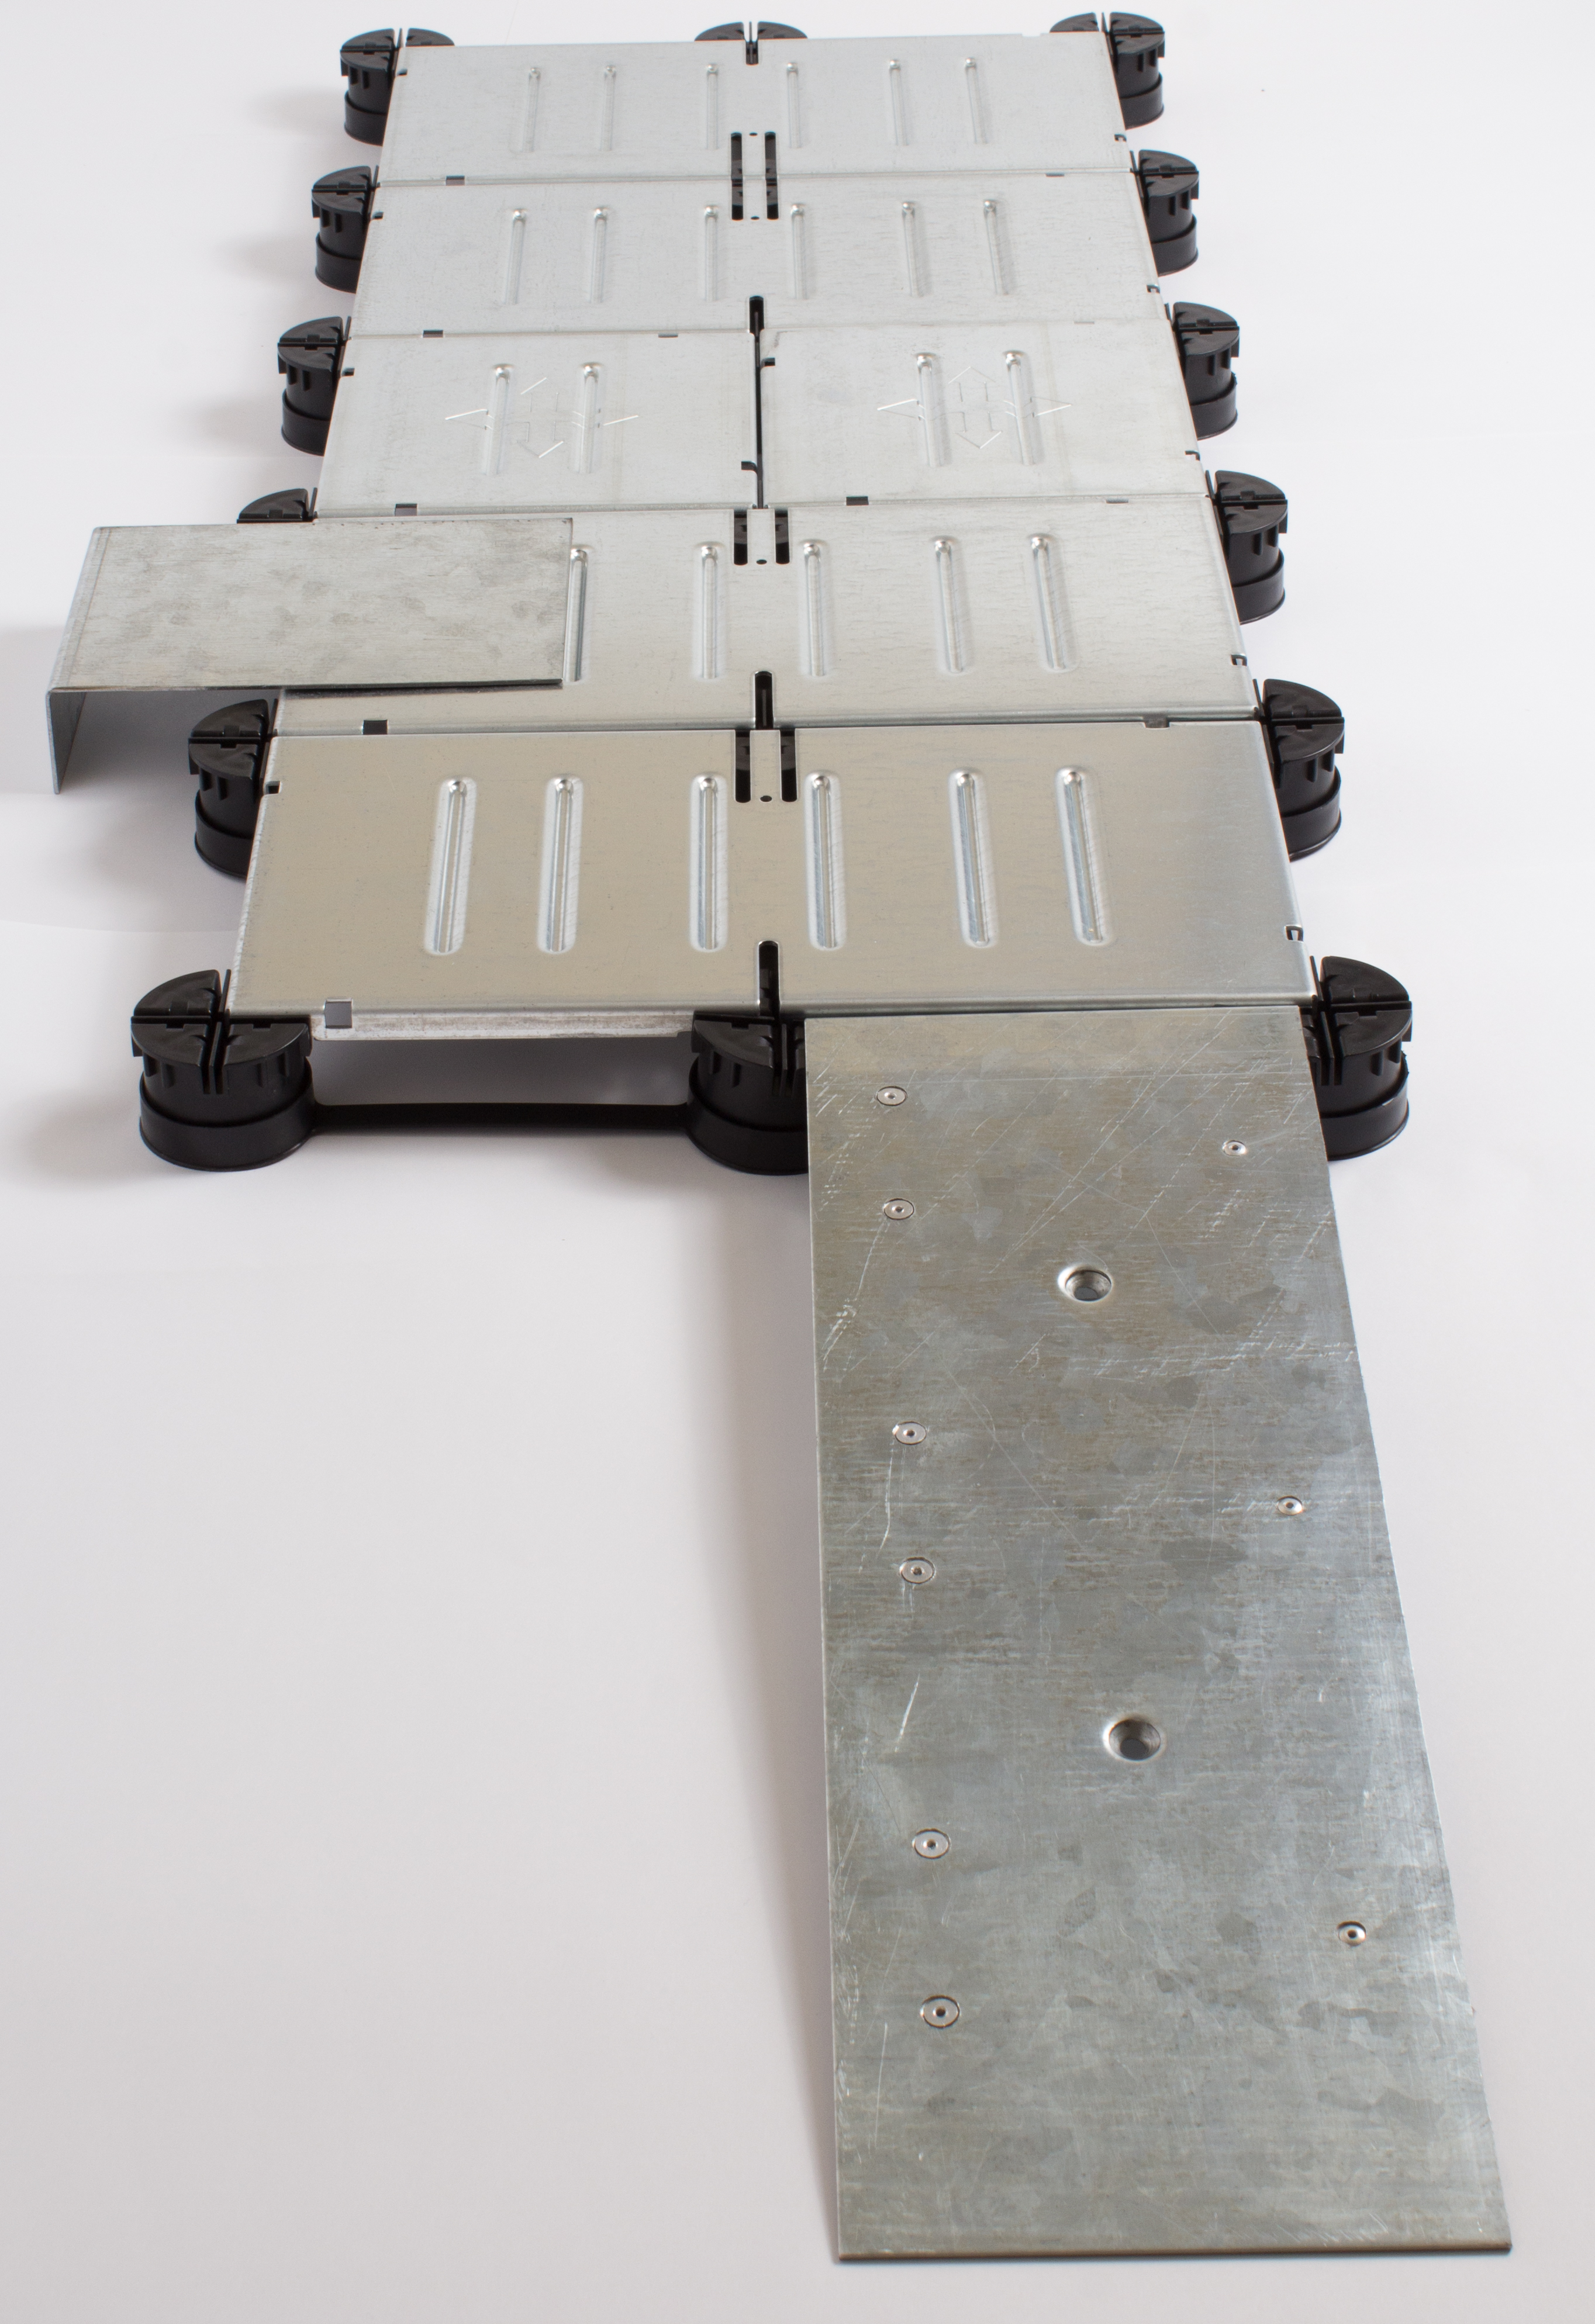 Sample of ramp, perimeter plate, and low profile flooring